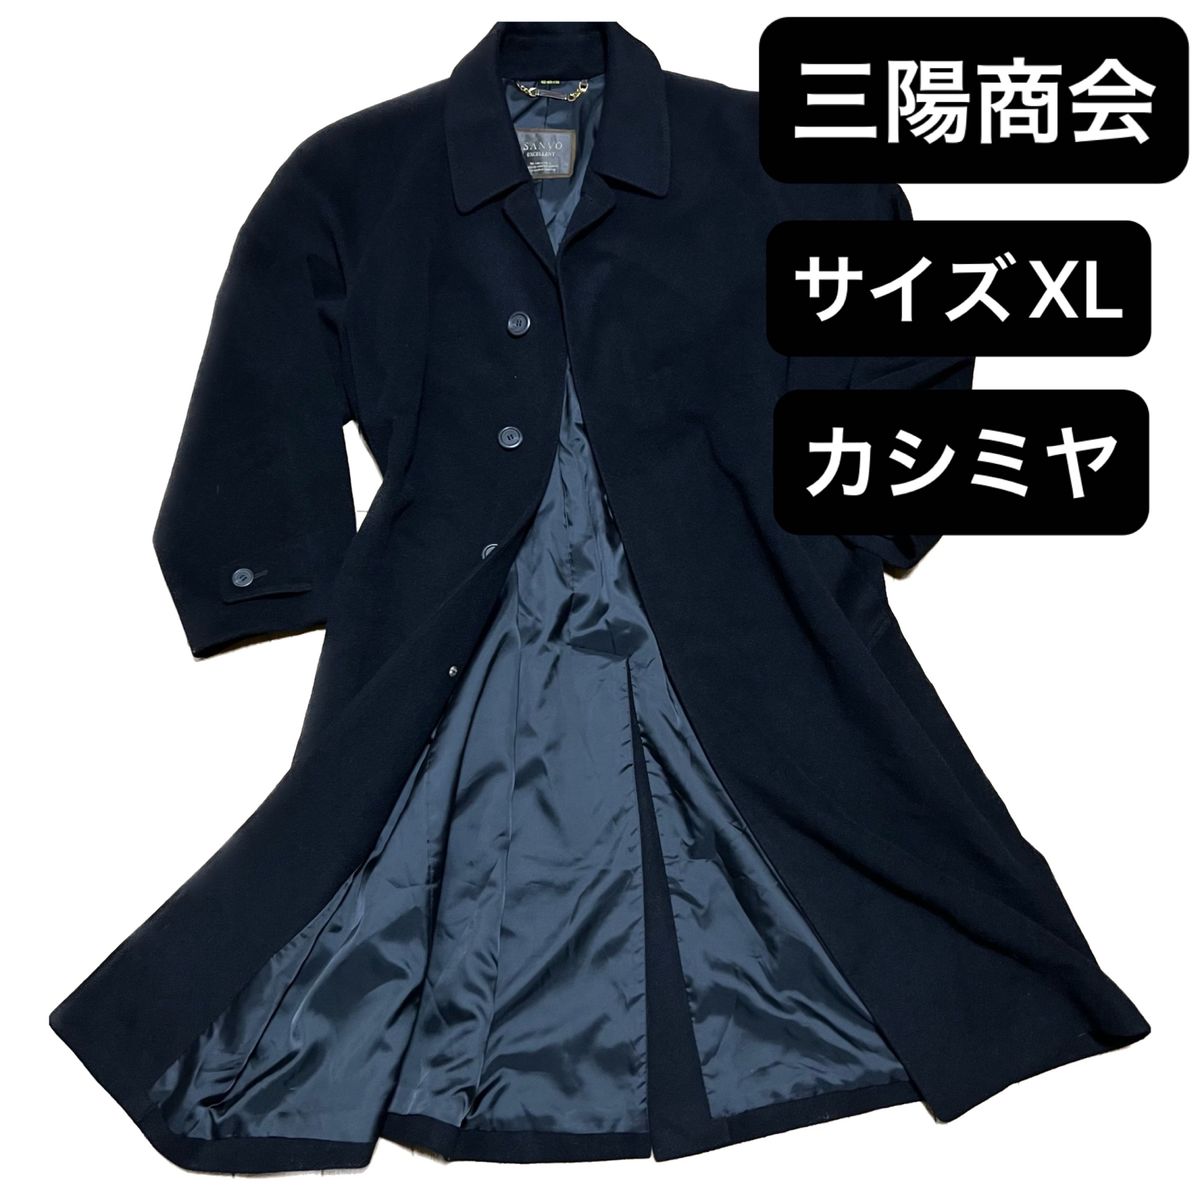 【カシミヤ】SANYO EXCELLENT 三陽商会 カシミヤ混 コート XL